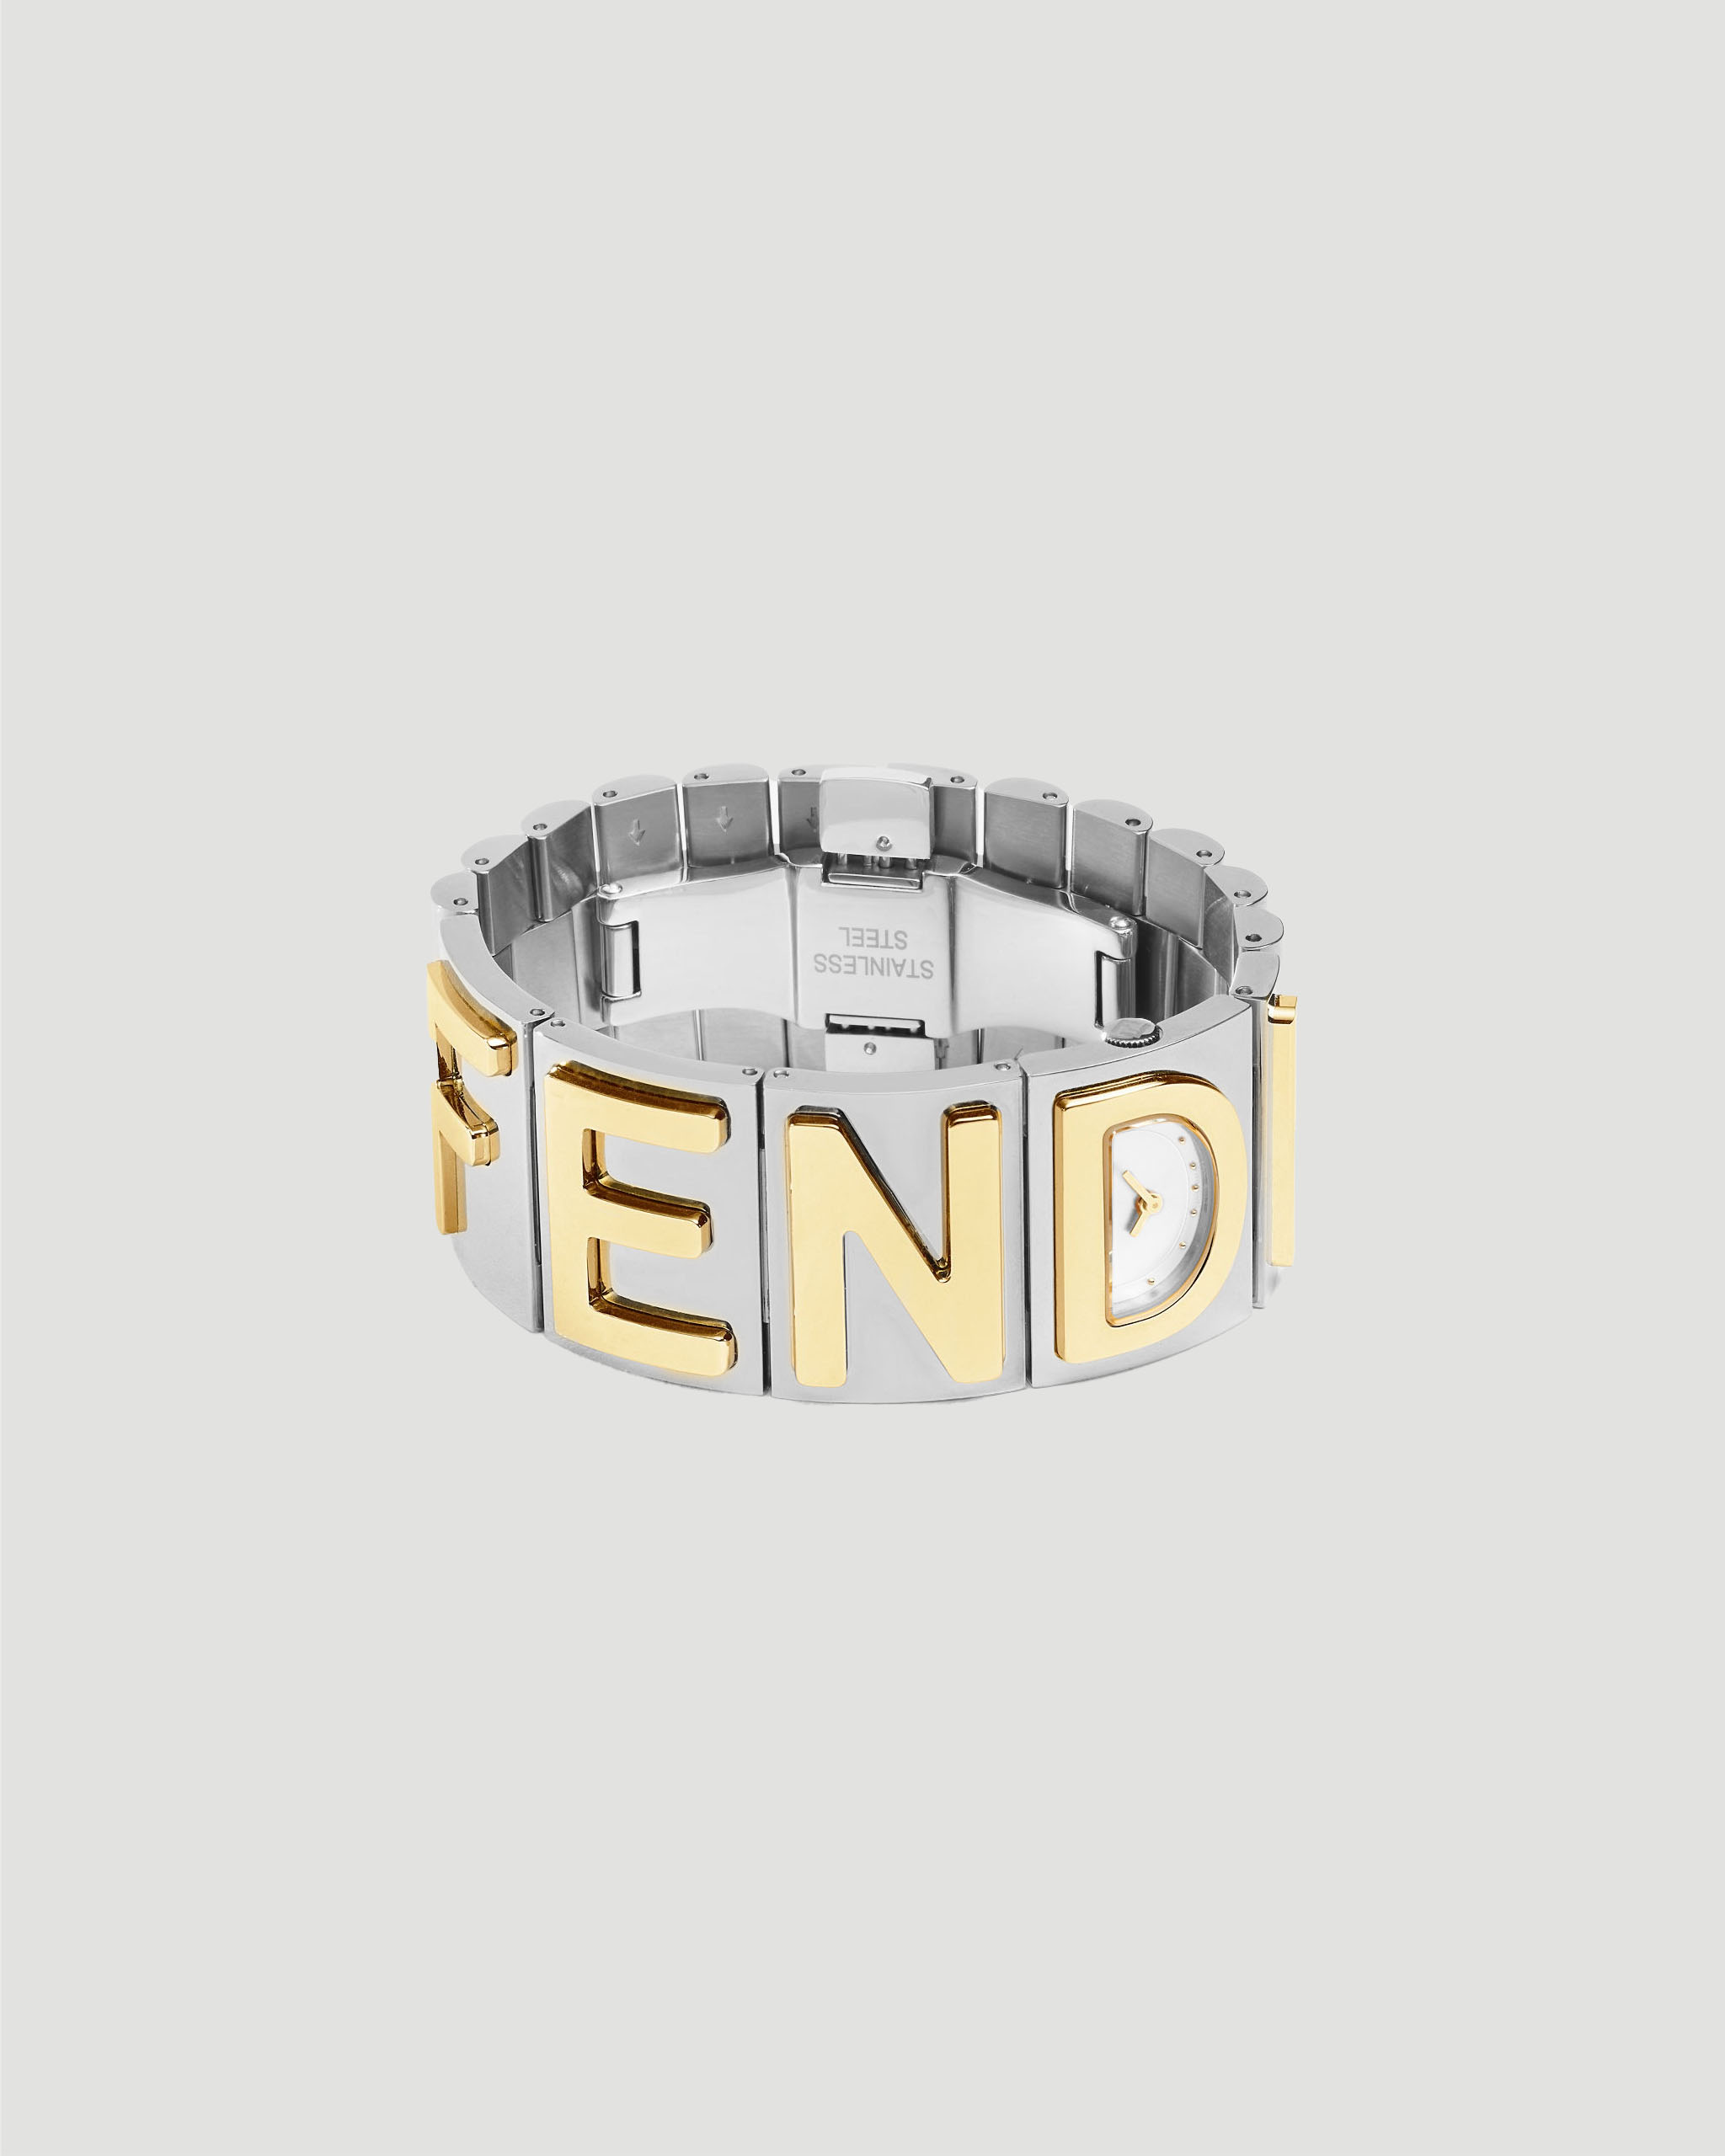 Bracelet watch with Fendi lettering - All-U-Re